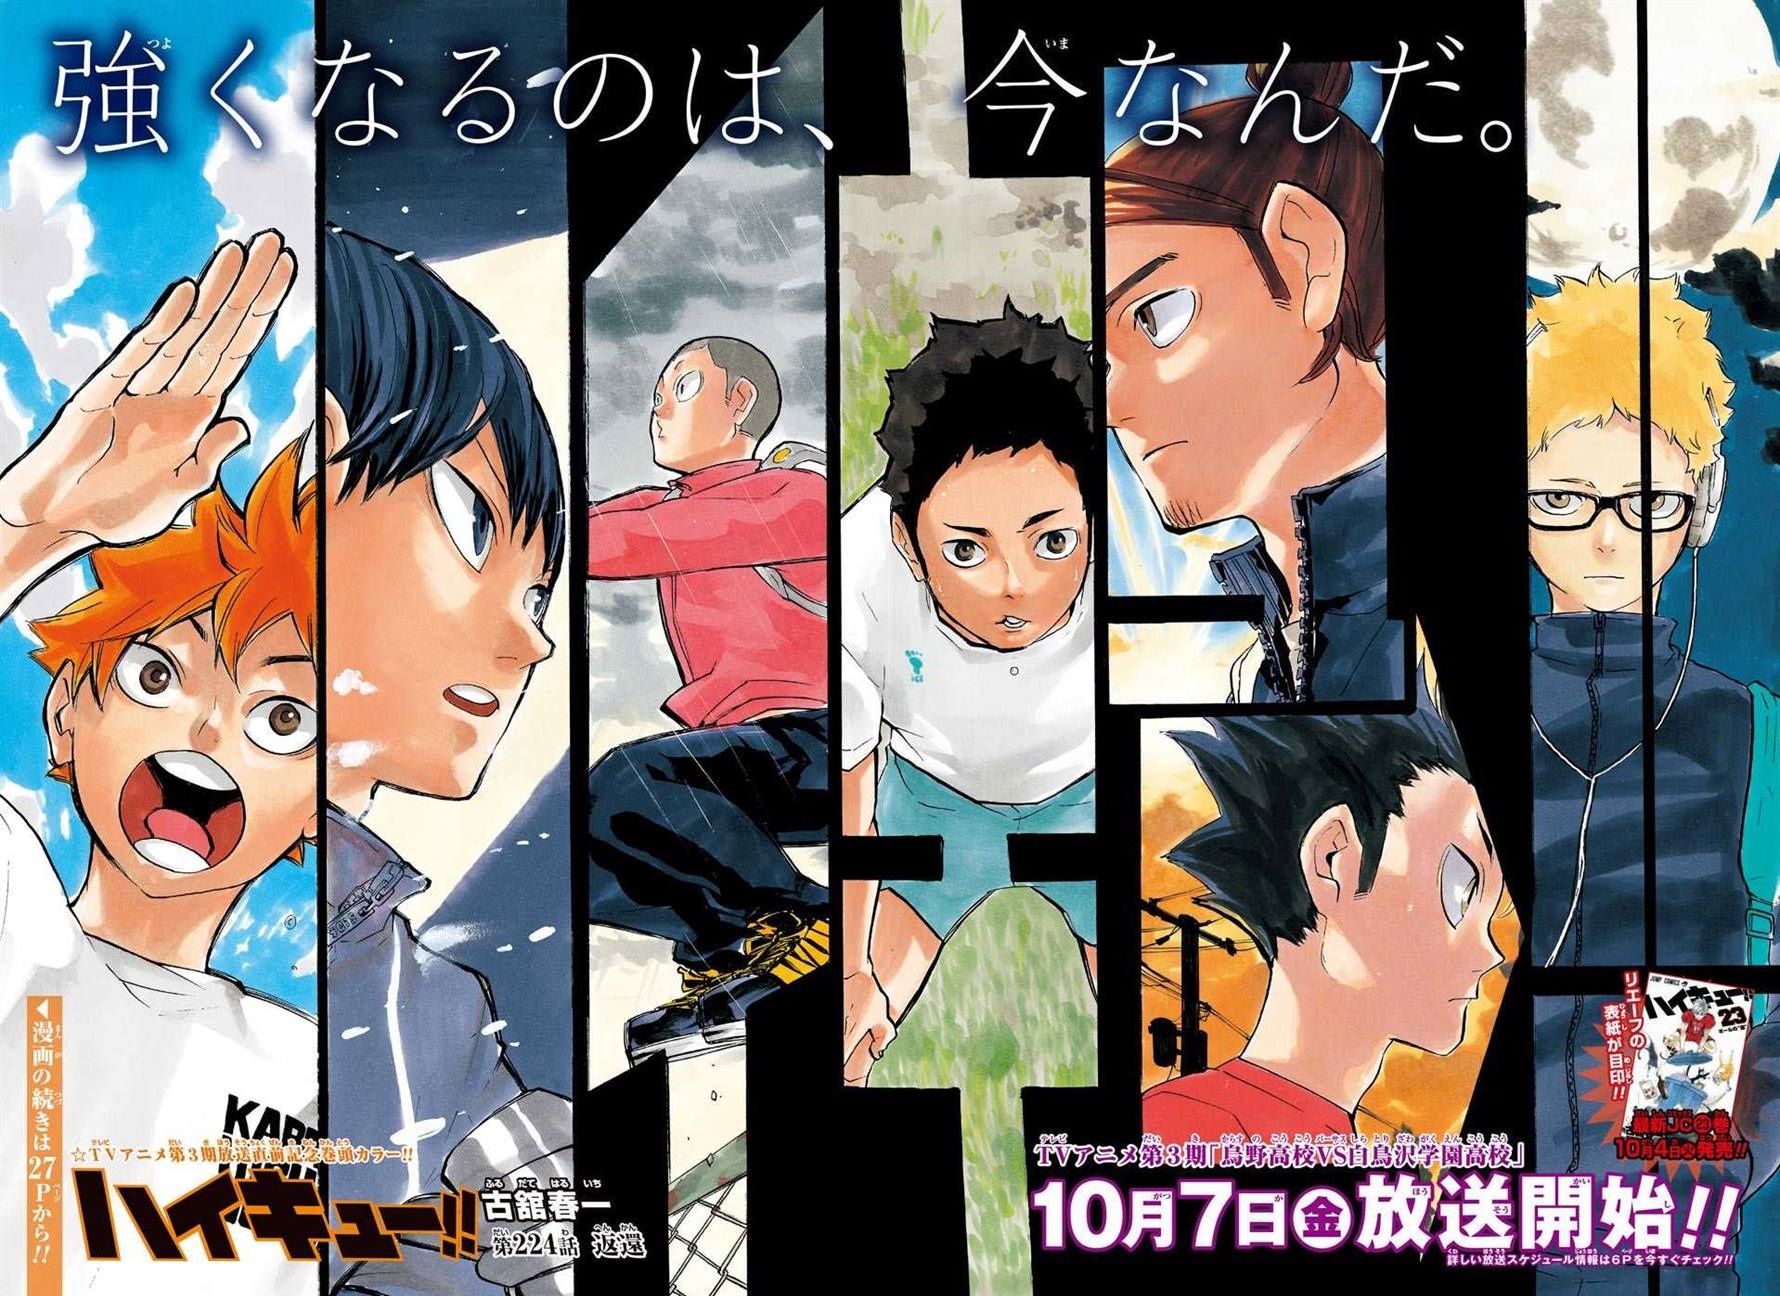 Haikyuu!! manga: Haikyuu!! Manga: The meaning behind the series' name,  explored